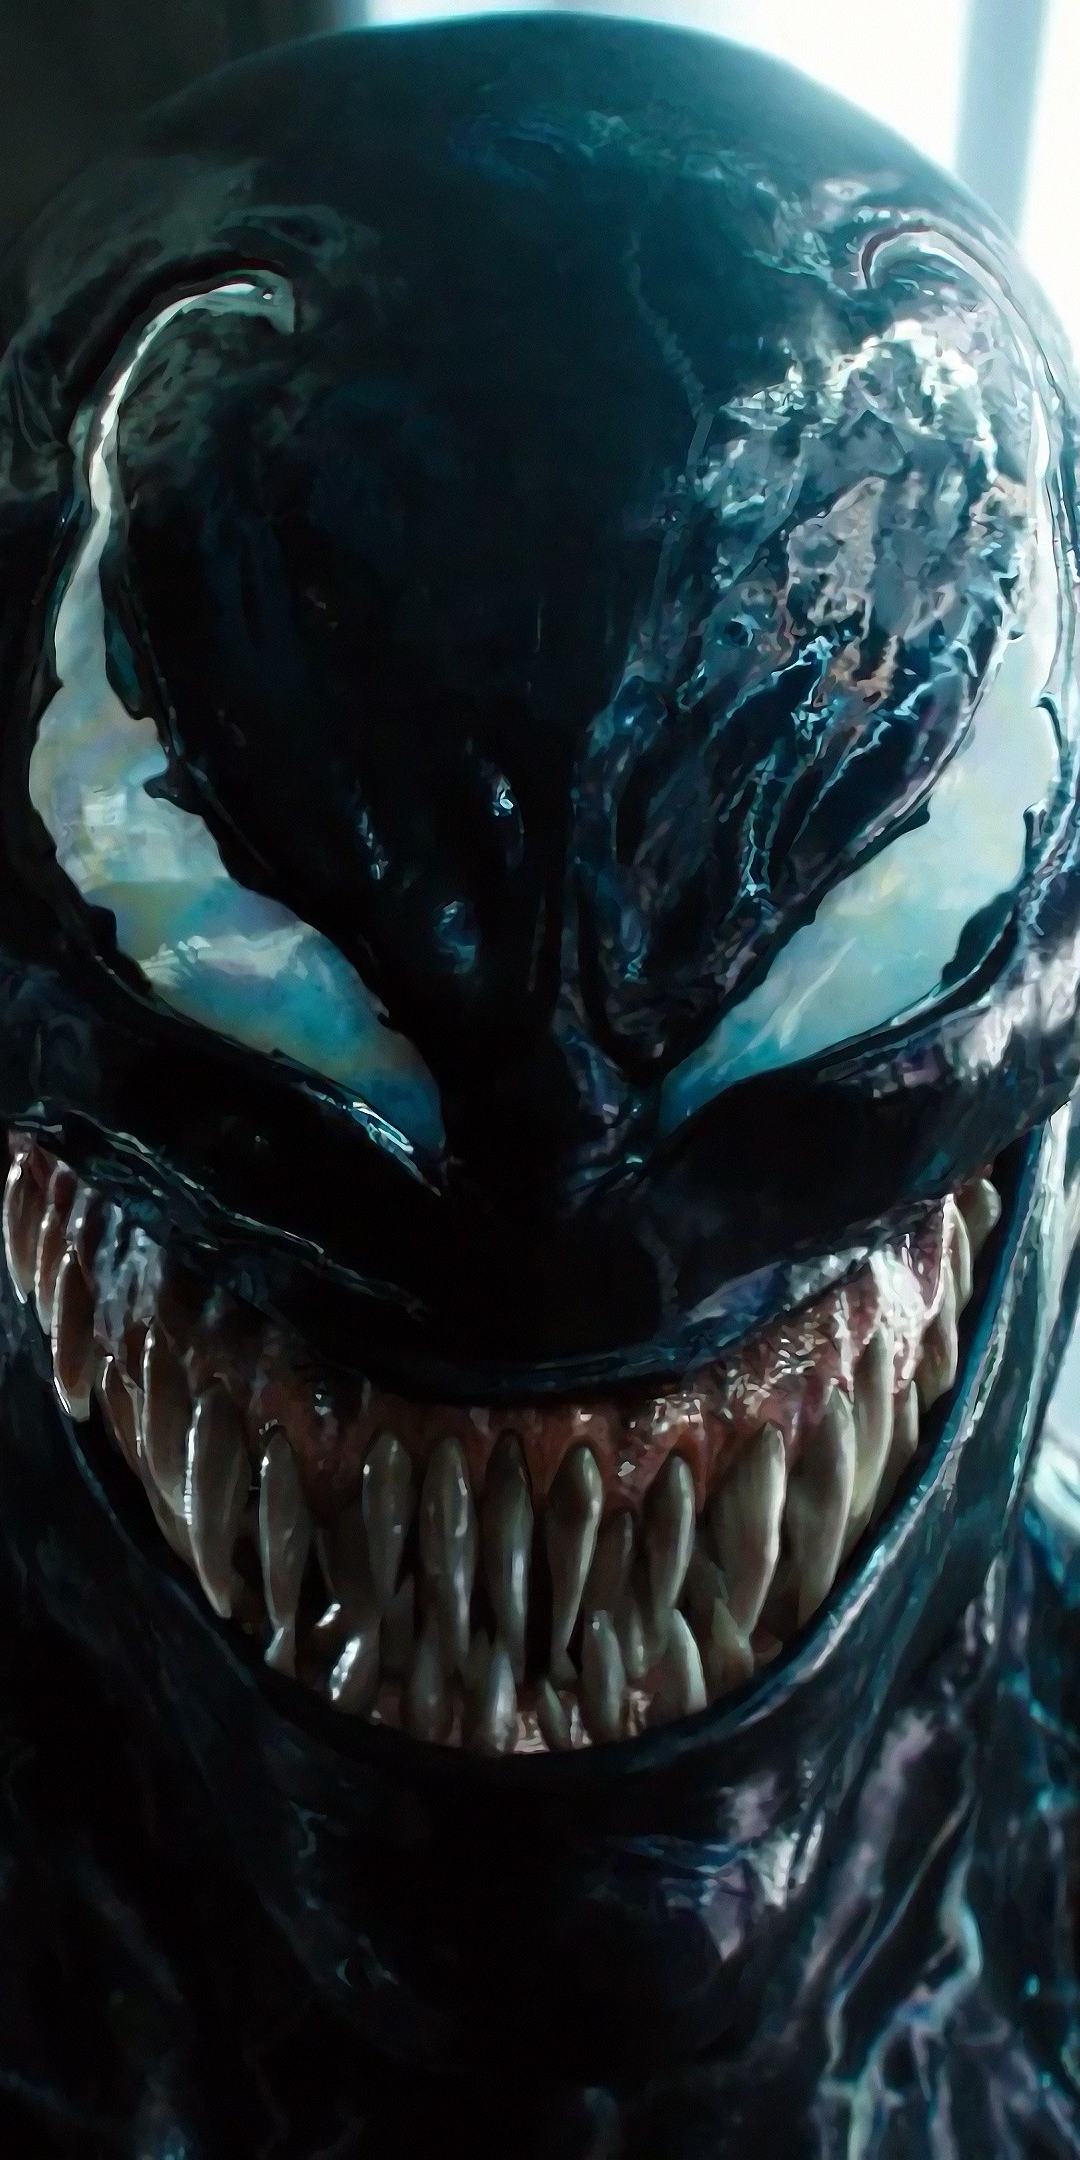 Descarga gratuita de fondo de pantalla para móvil de Películas, Venom.